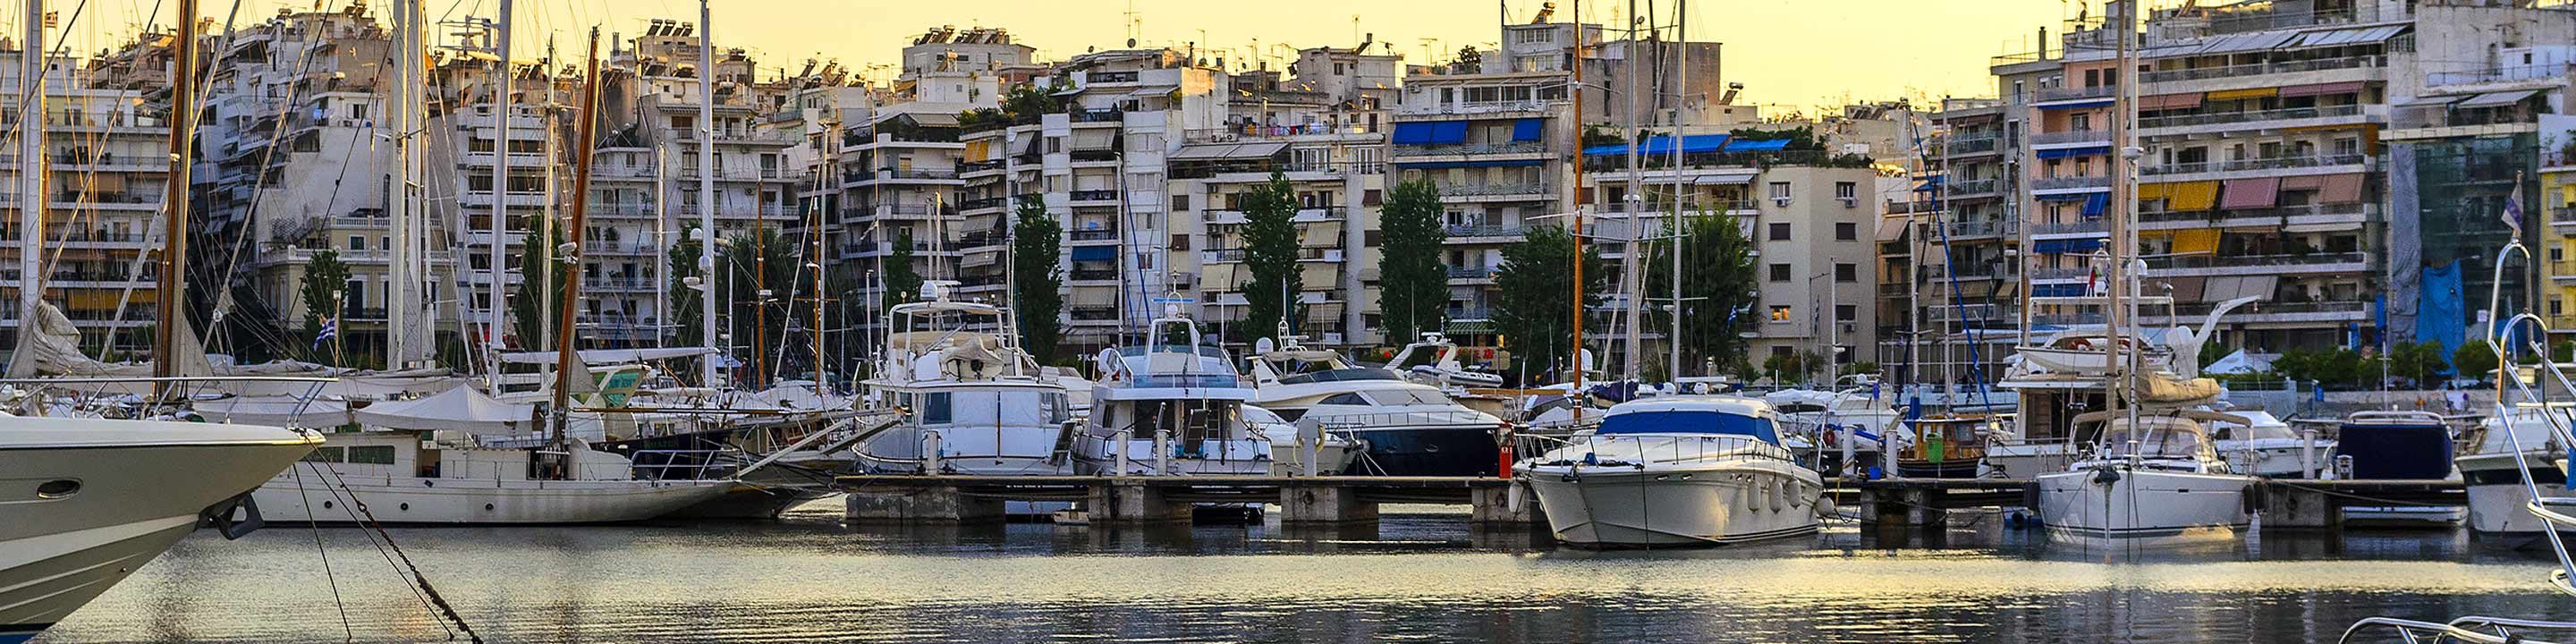 Zea Marina in Piraeus